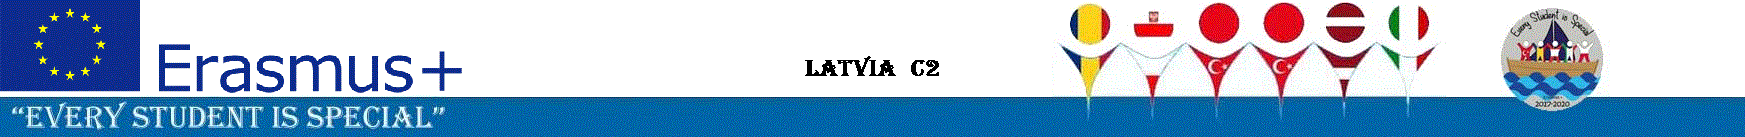 Latvia  C2